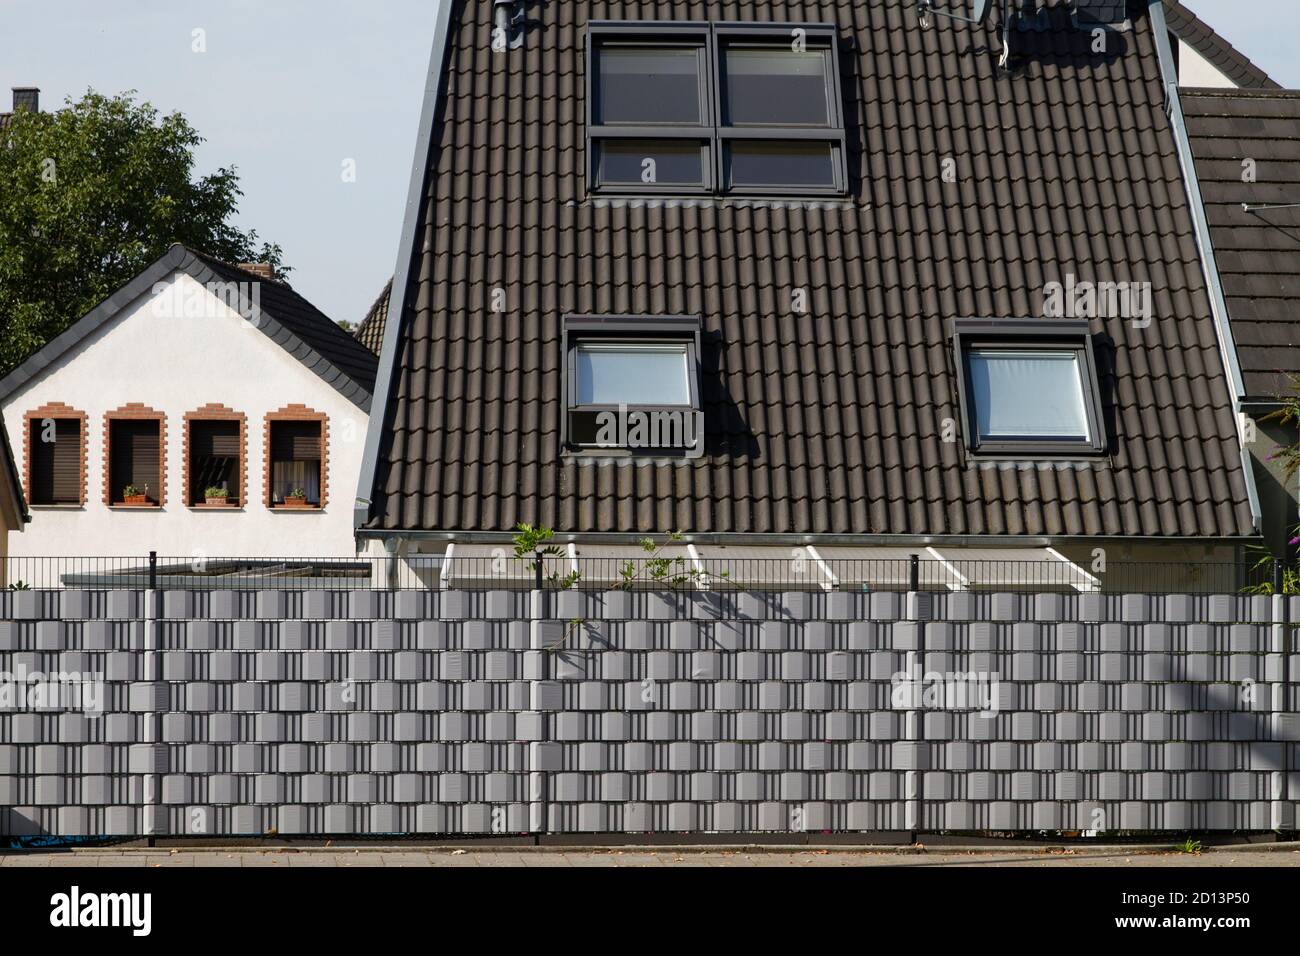 Eingezäuntes Wohnhaus im Stadtteil Niehl, Gitterzaun mit Privatsphäre, Köln, Deutschland. Eingezäuntes Wohnhaus Stadtteil Niehl, Gitt Stockfoto